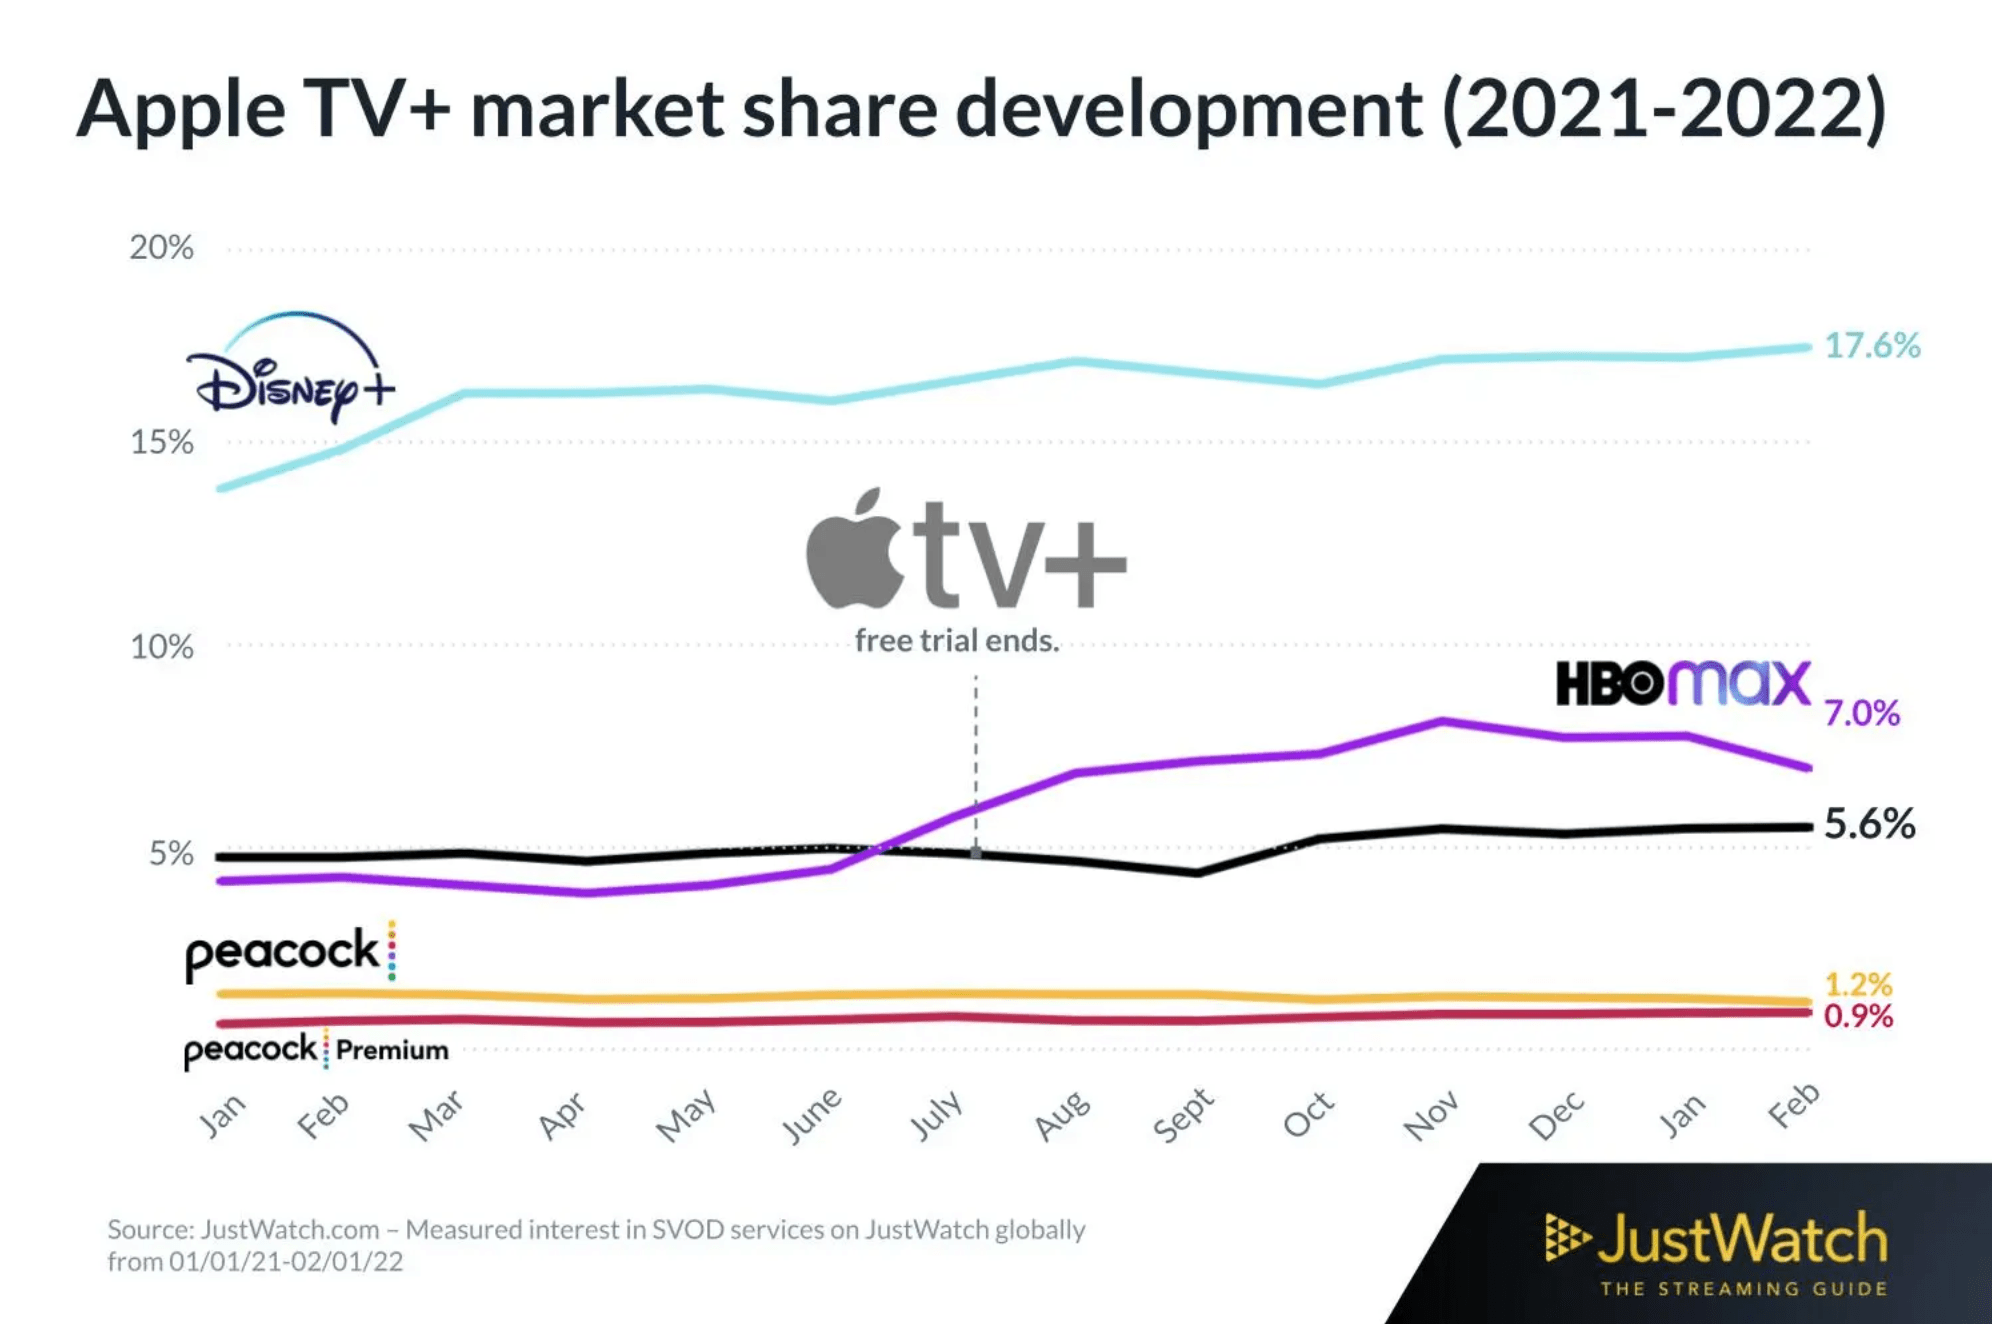 cirkulære Min Regelmæssigt Apple TV+ nærmer sig HBO Max - MereMobil.dk